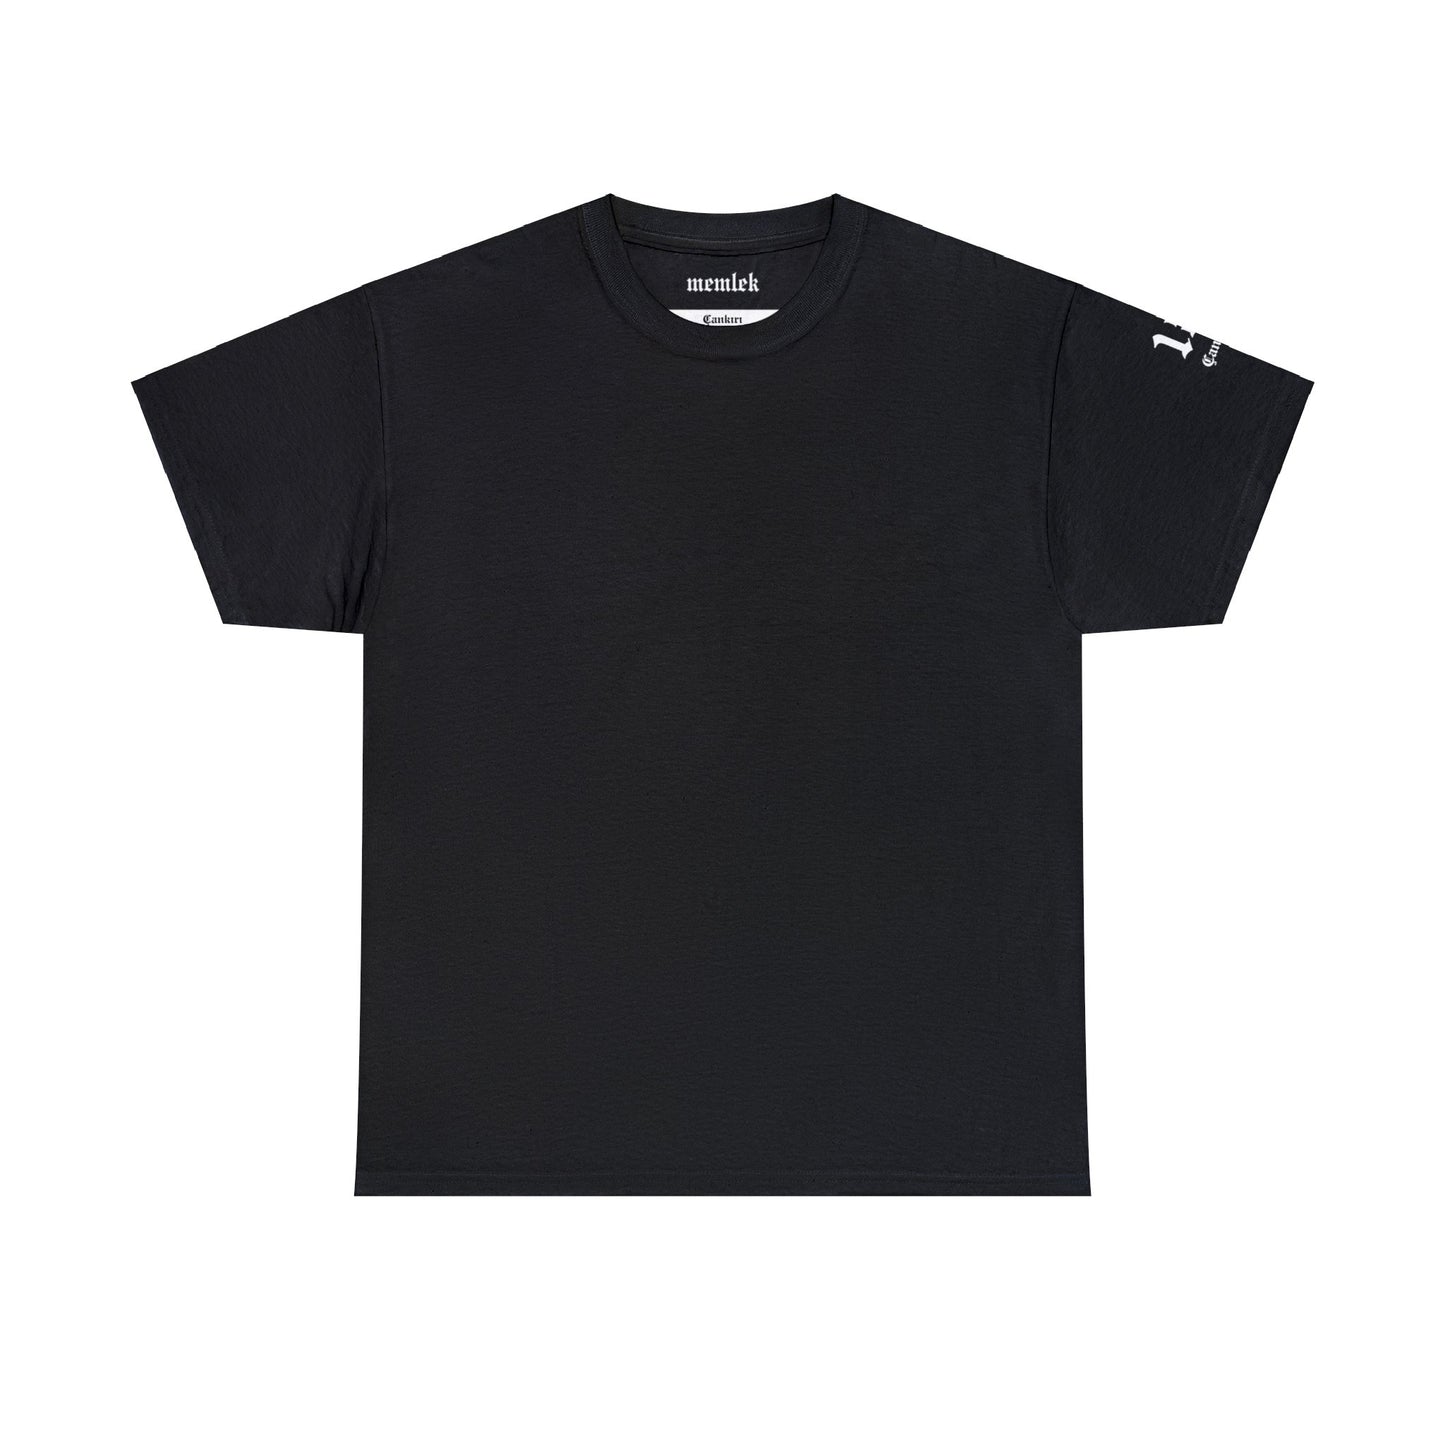 İlçem - 18 Çankırı - T-Shirt - Back Print - Black